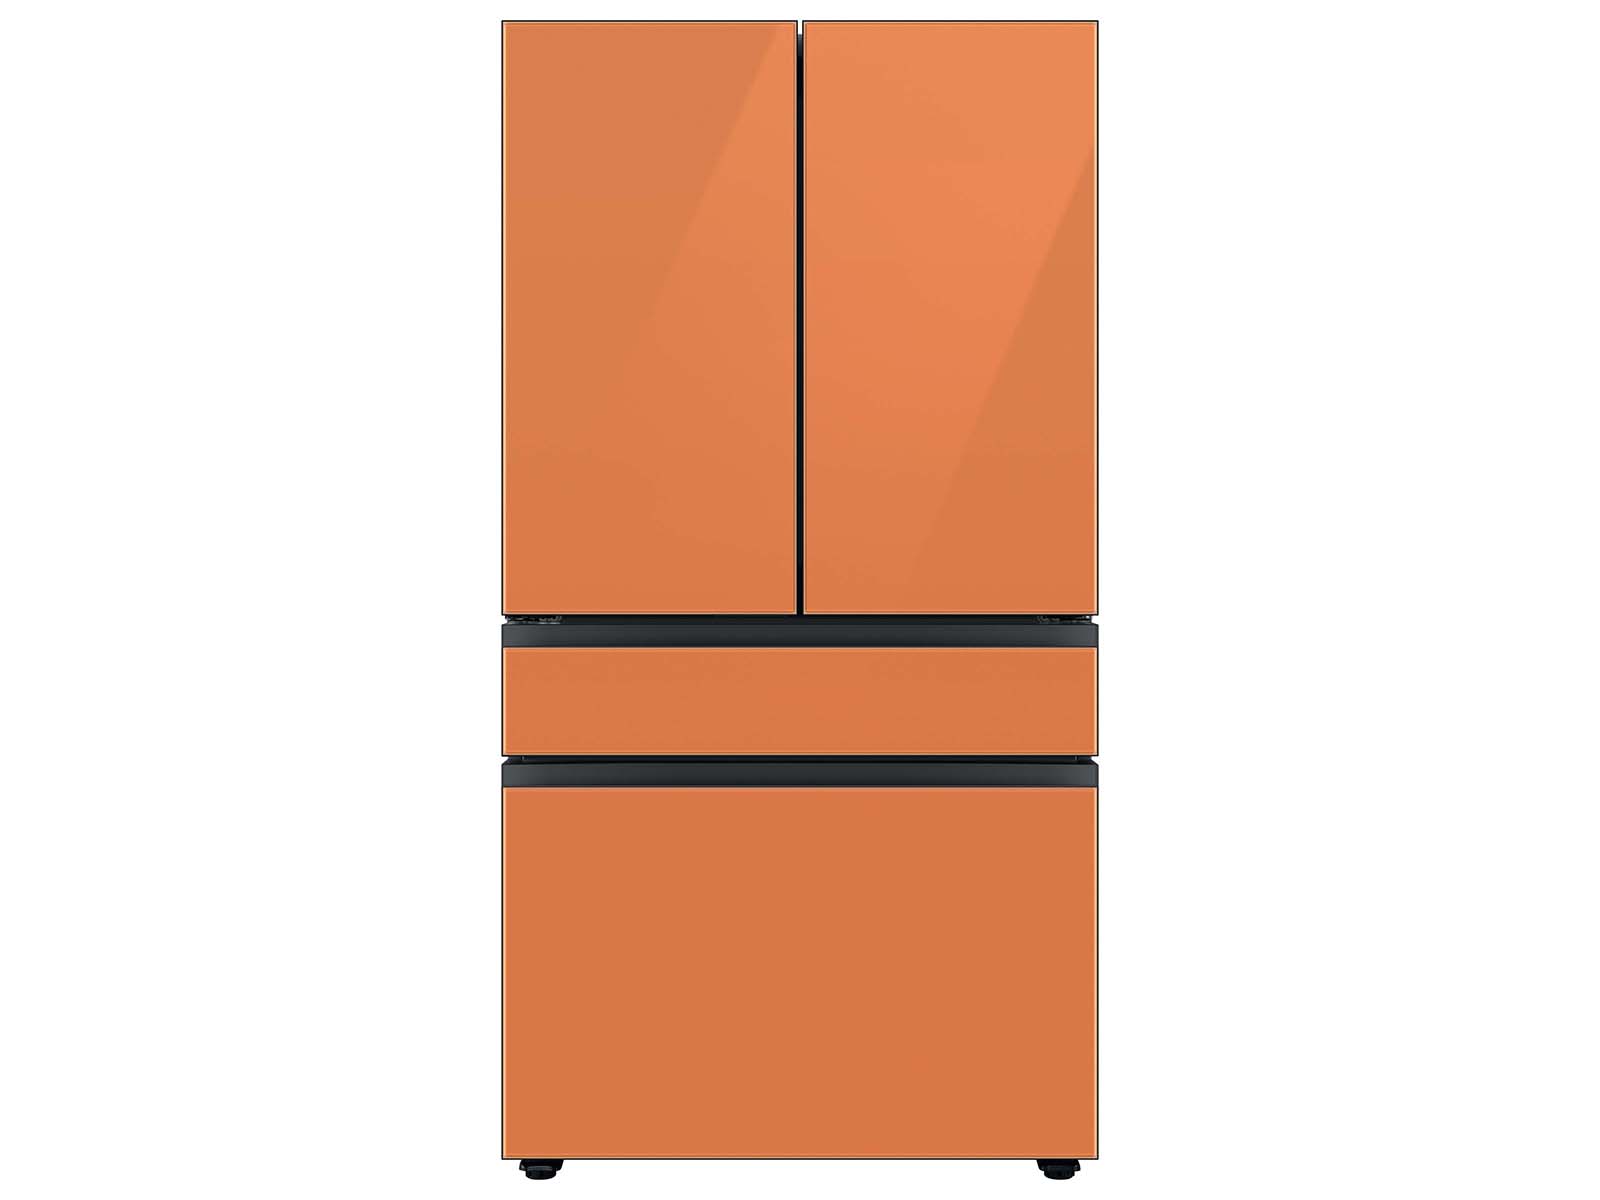 Bespoke 4-Door French Door Refrigerator (29 cu. ft.) with Customizable Door Panel Colors and Beverage Center&trade; in Clementine Glass